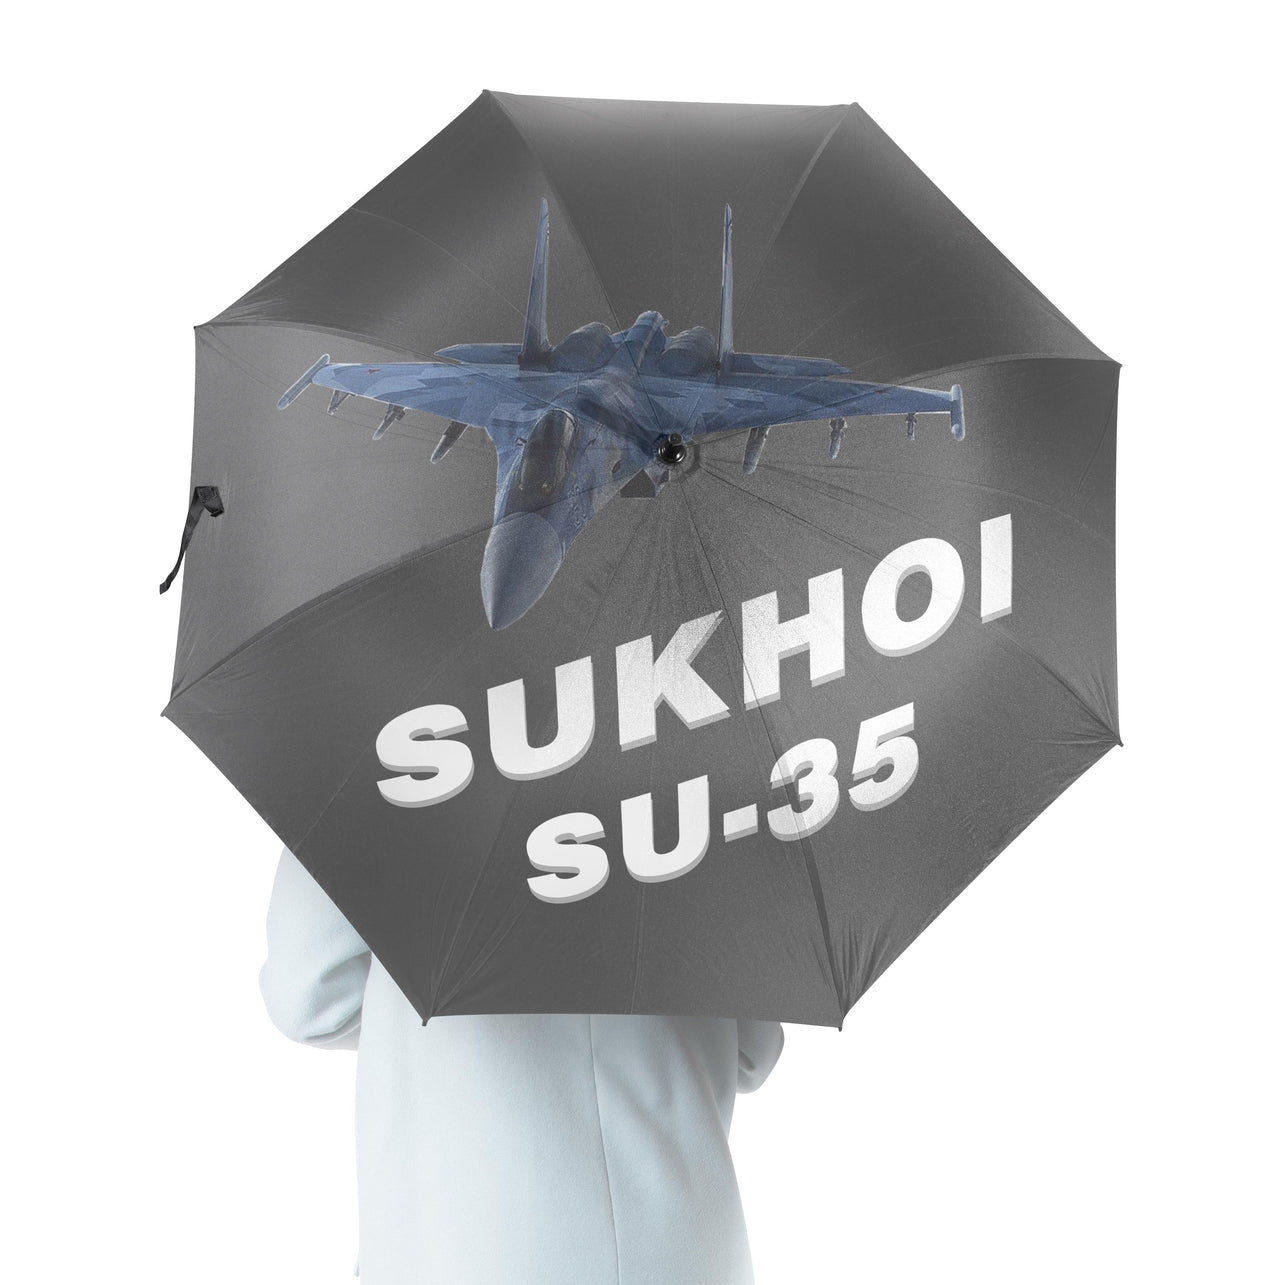 The Sukhoi SU-35 Designed Umbrella